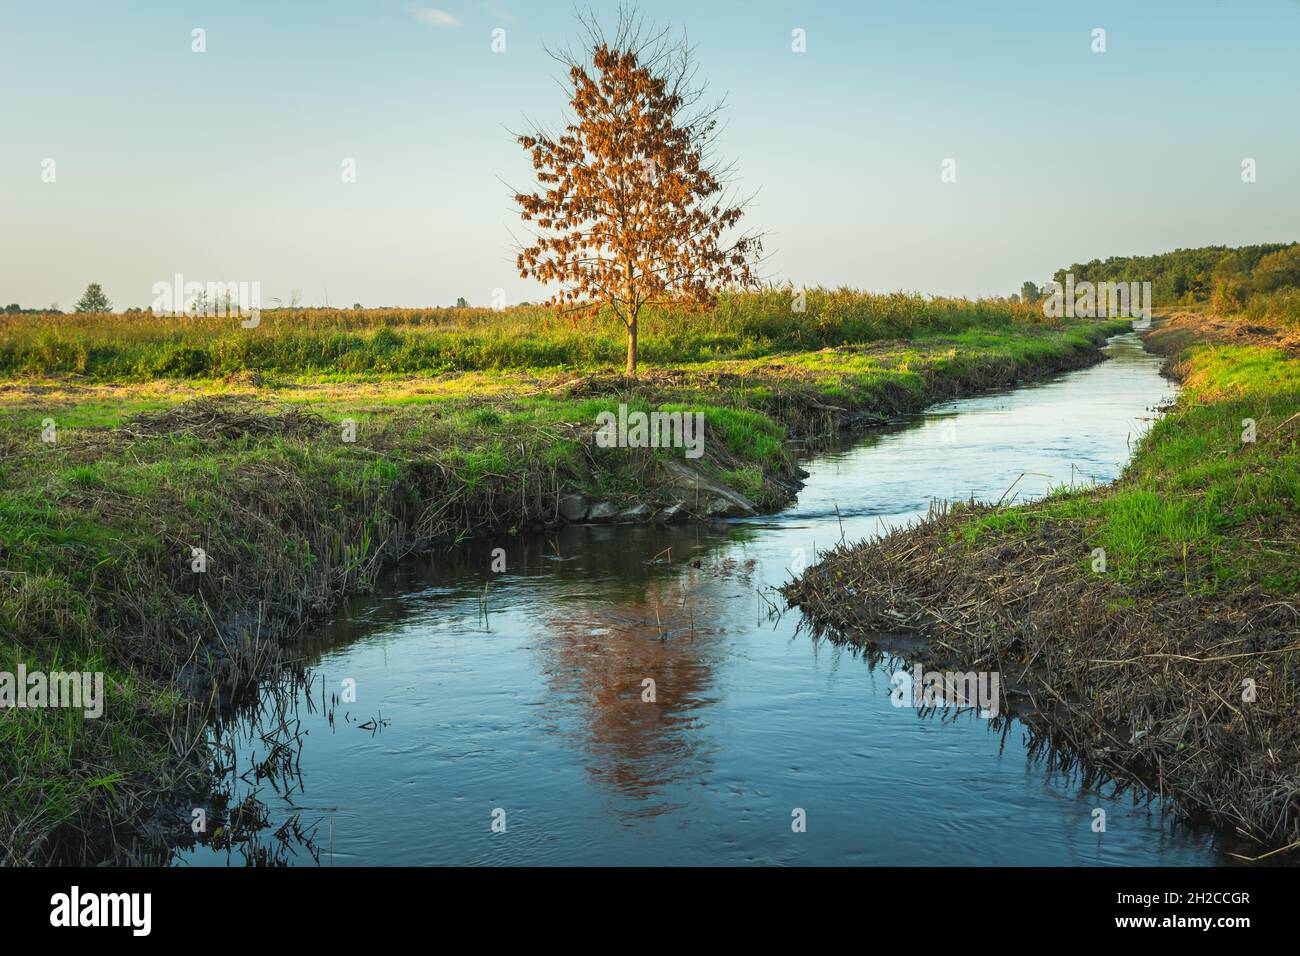 Herbstbaum, der an einem kleinen Fluss wächst, Stankow, Lubelskie, Polen Stockfoto